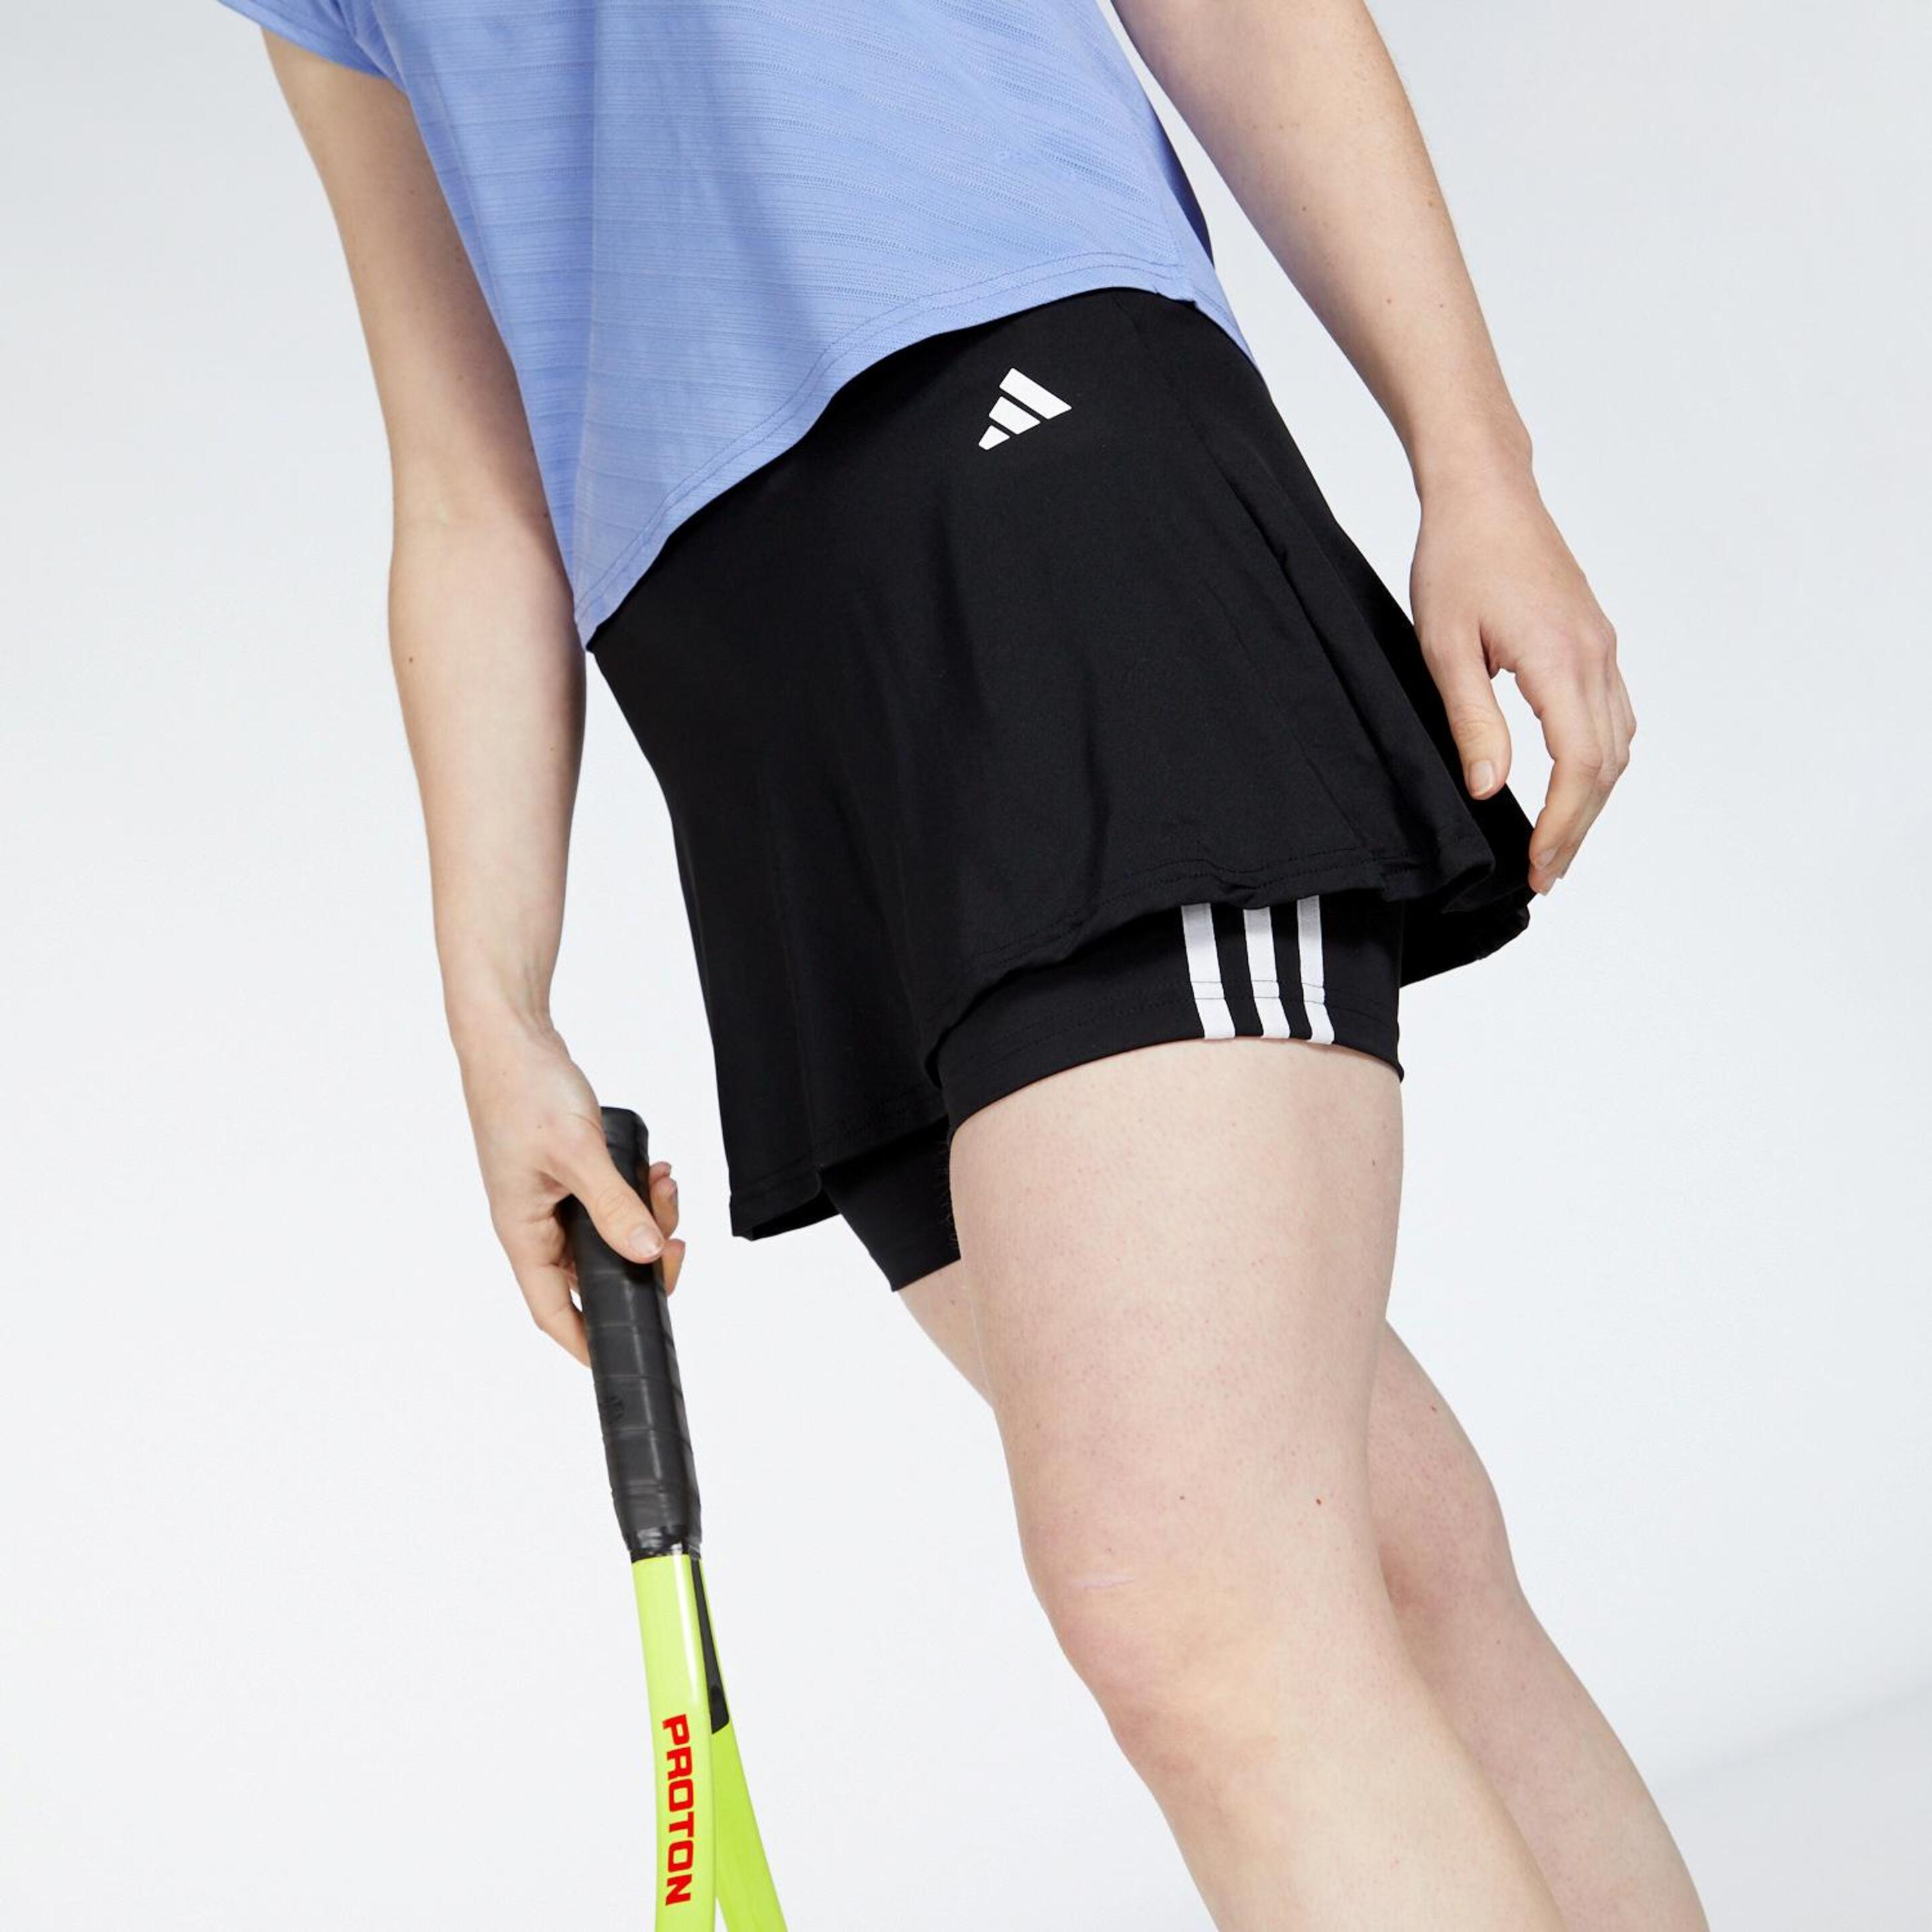 Gonna Tennis adidas